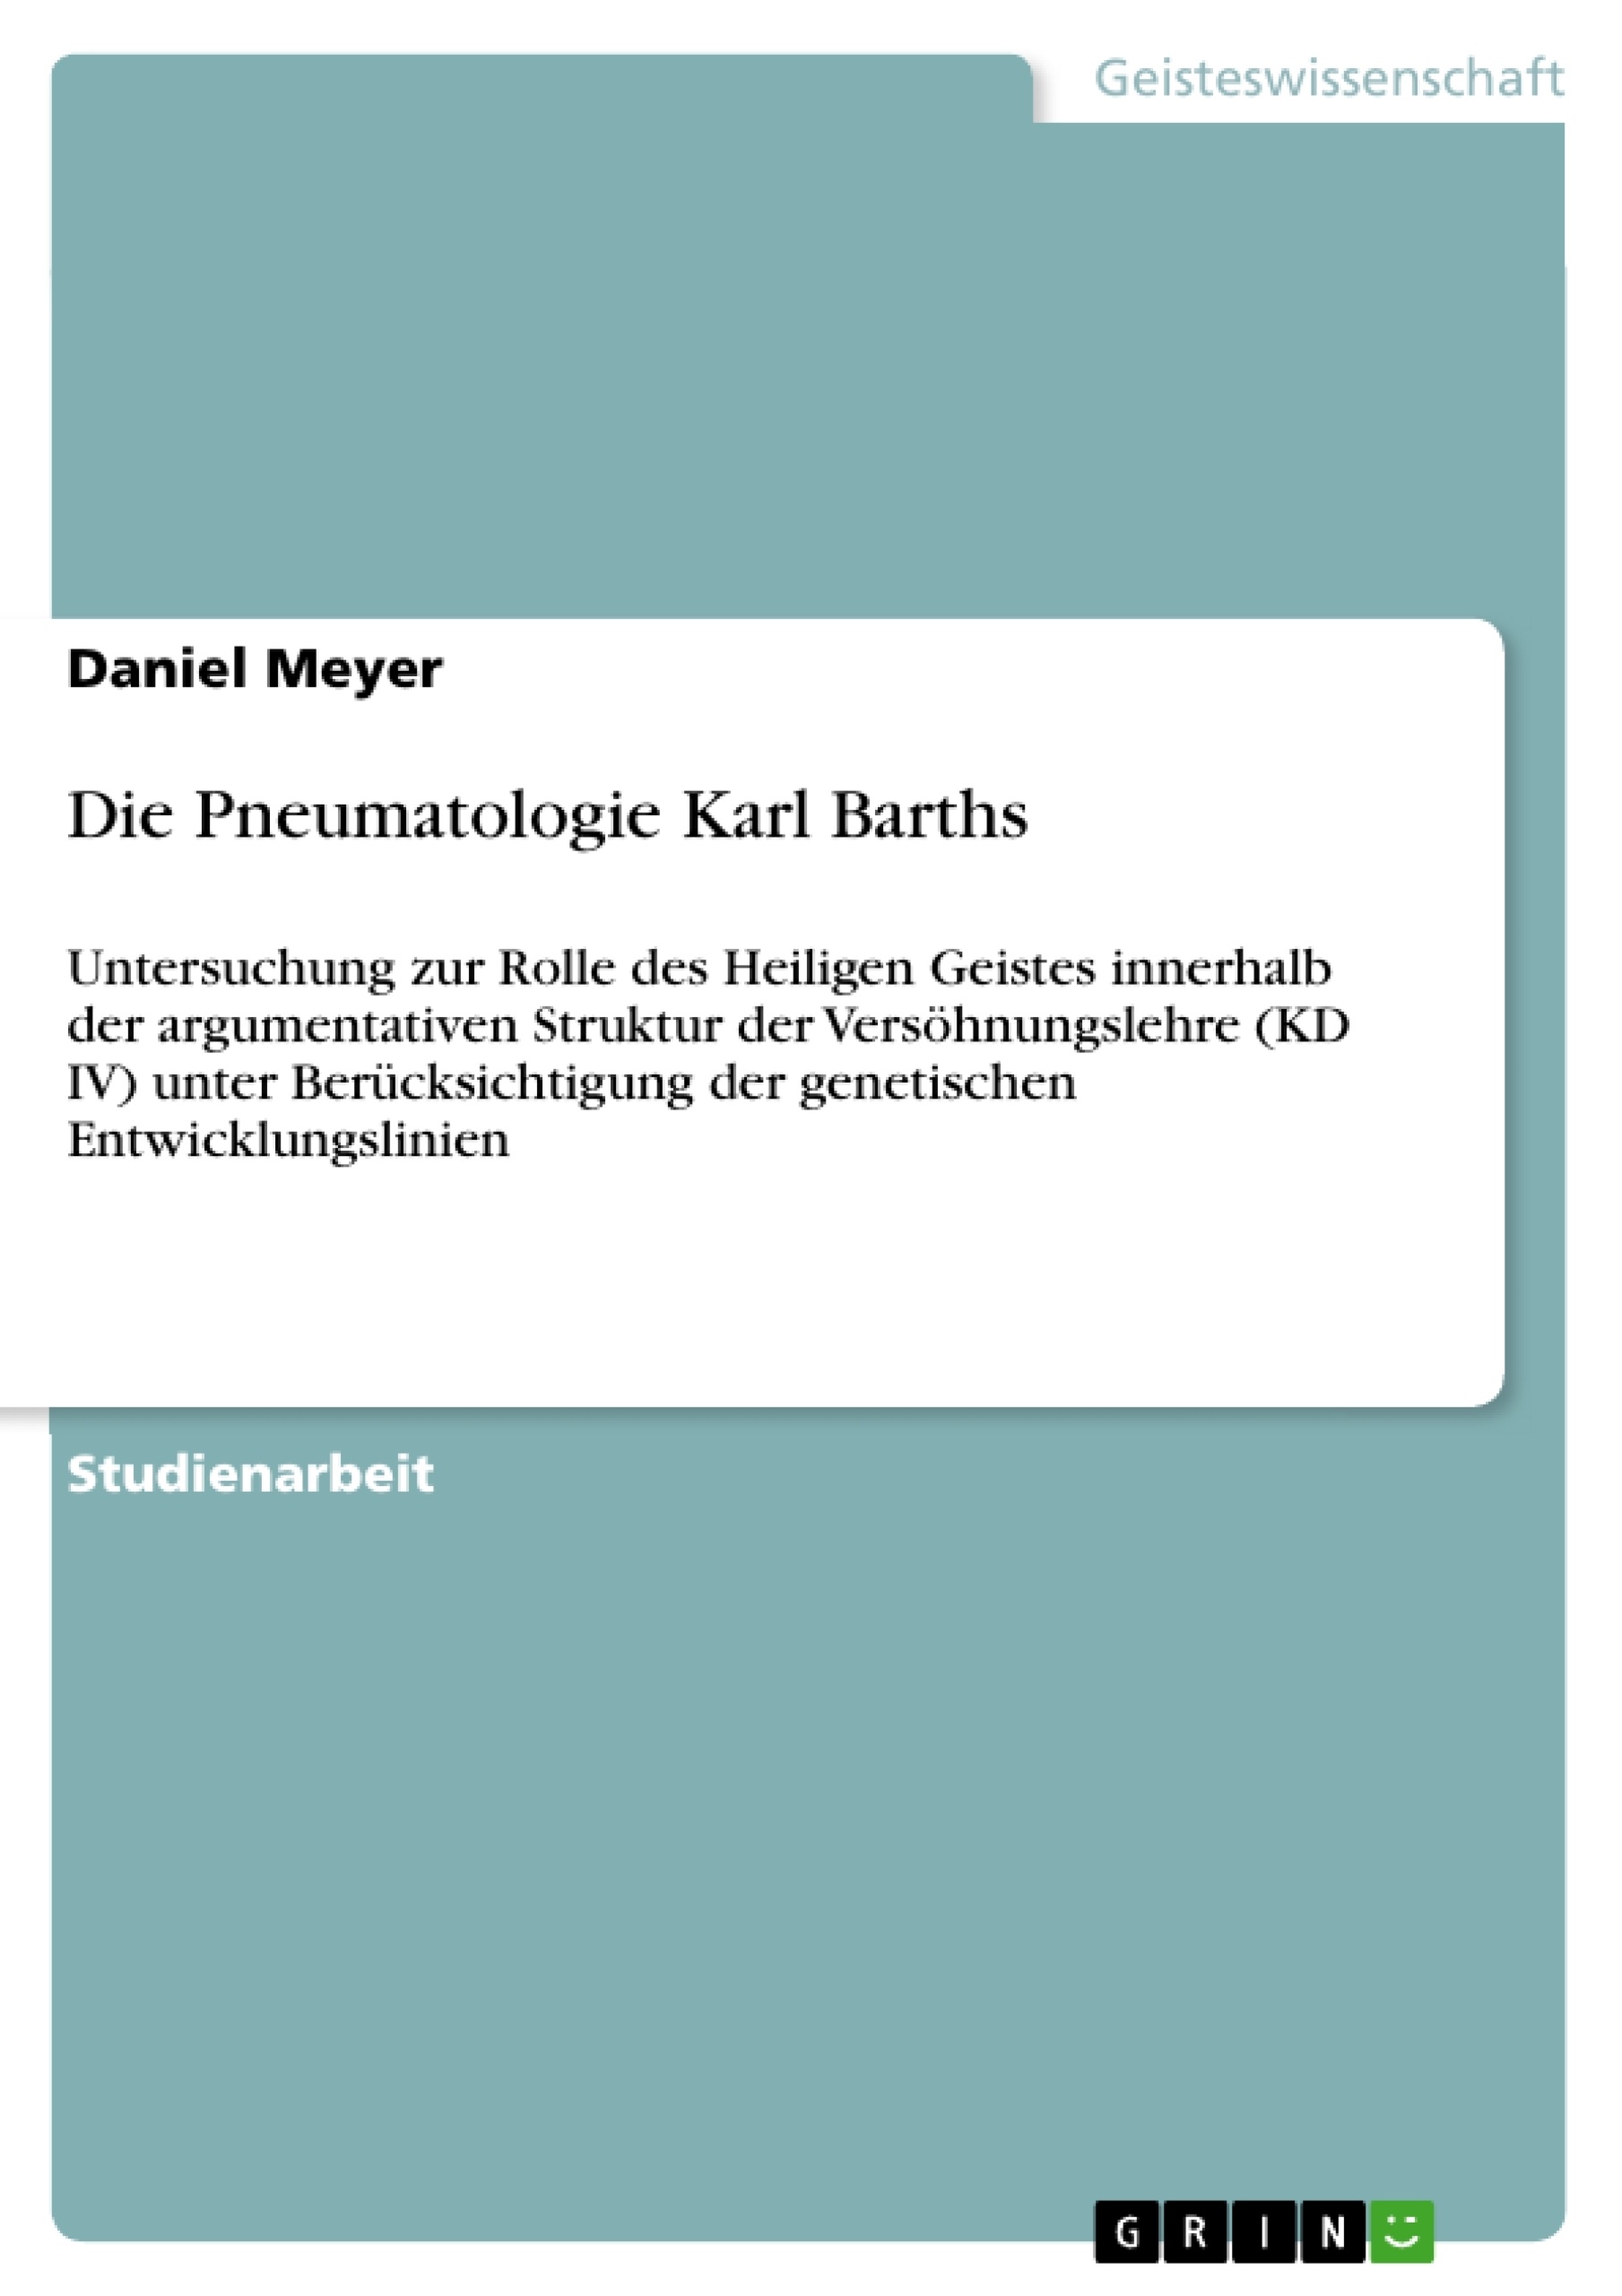 Title: Die Pneumatologie Karl Barths